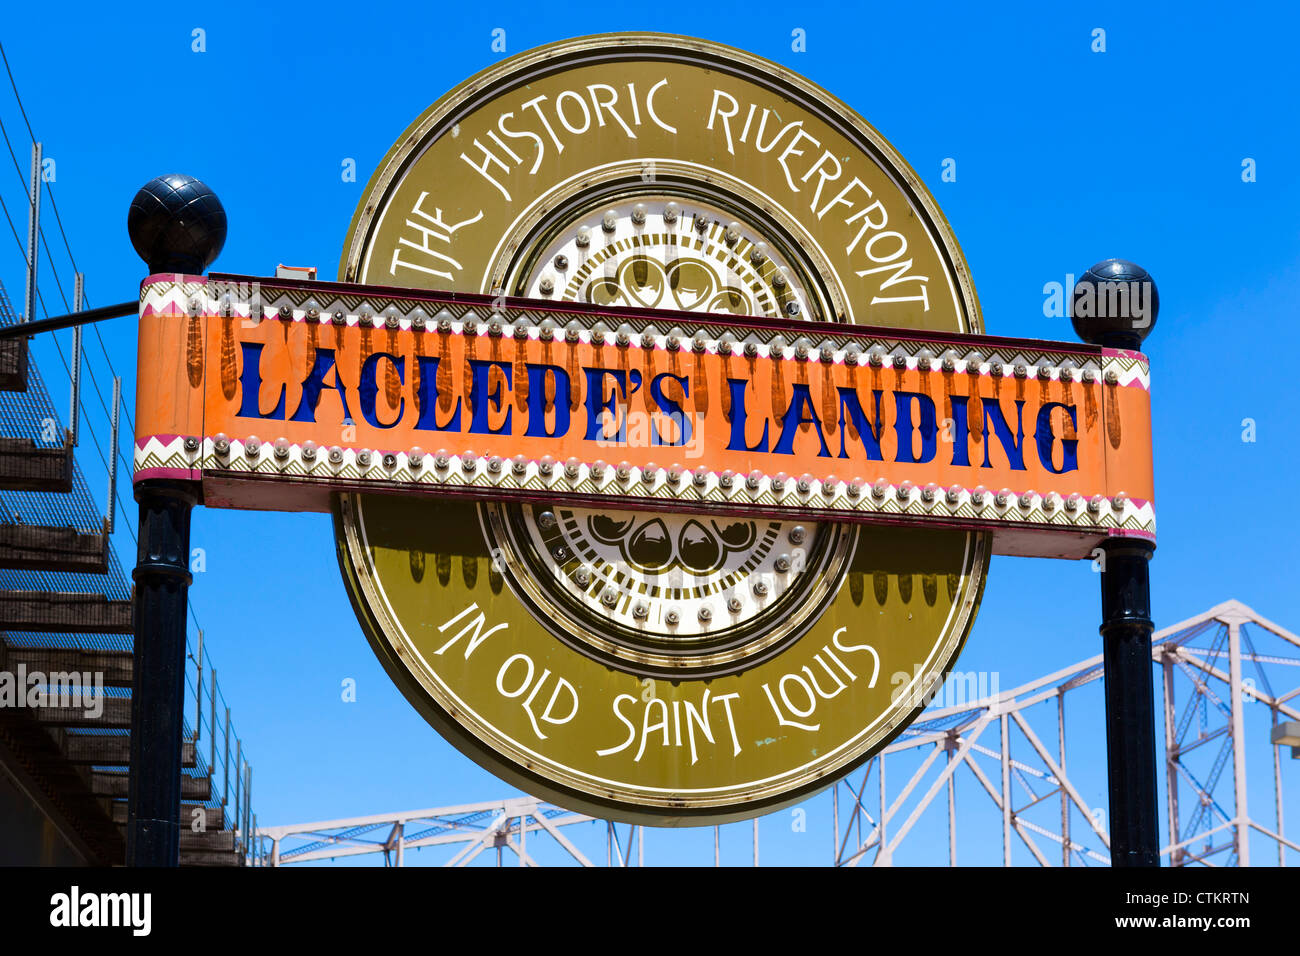 Inscrivez-vous à Laclede's landing sur le fleuve historique, St Louis, Missouri, USA Banque D'Images